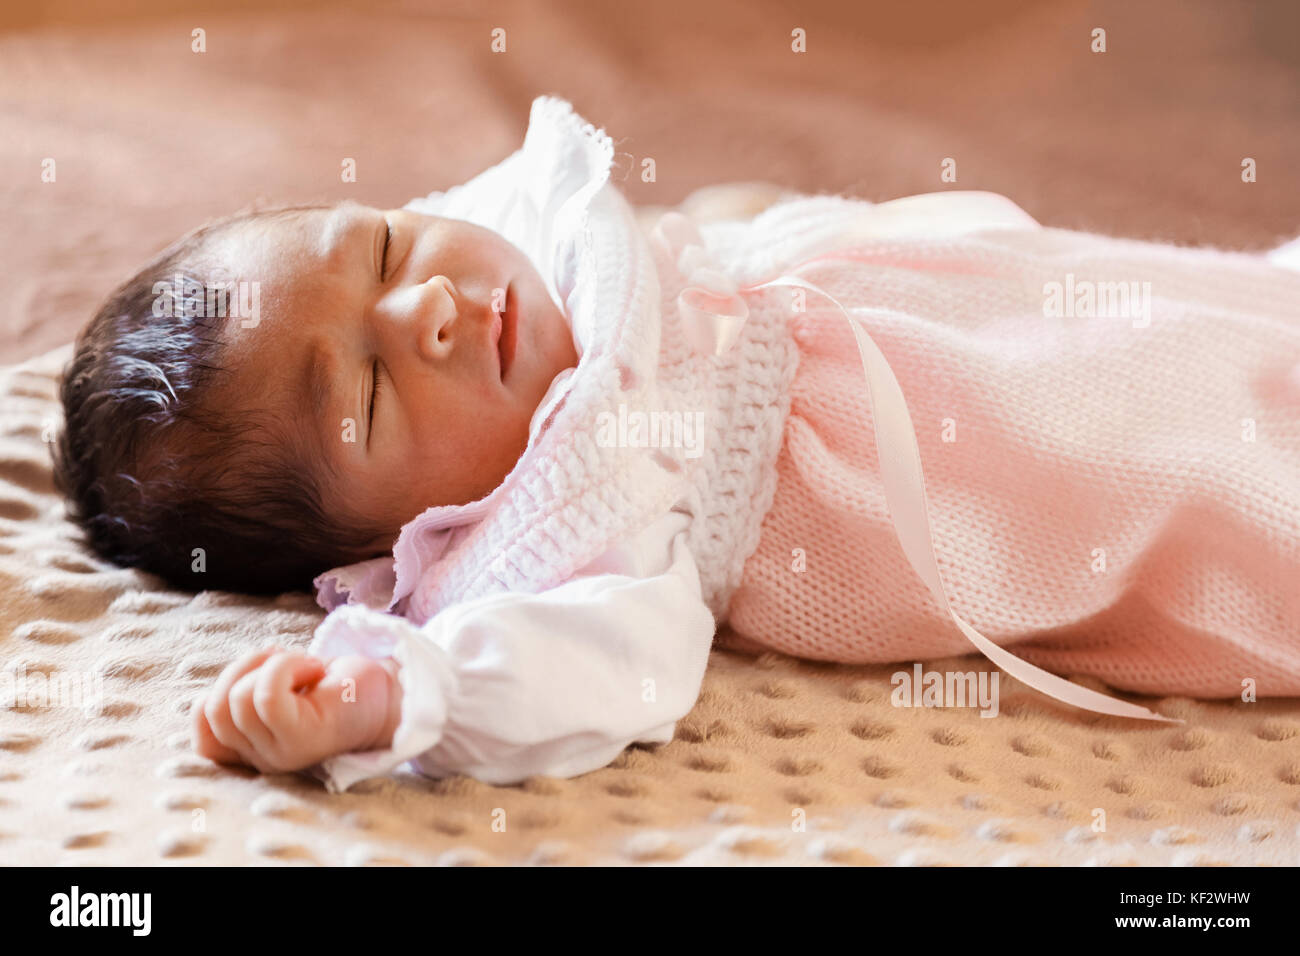 Deux semaines au nouveau-né cute baby girl rose doux vêtements tricotés, dormir paisiblement dans son lit / Naissance bebe Fille Dormir dormir couchette enfant Banque D'Images